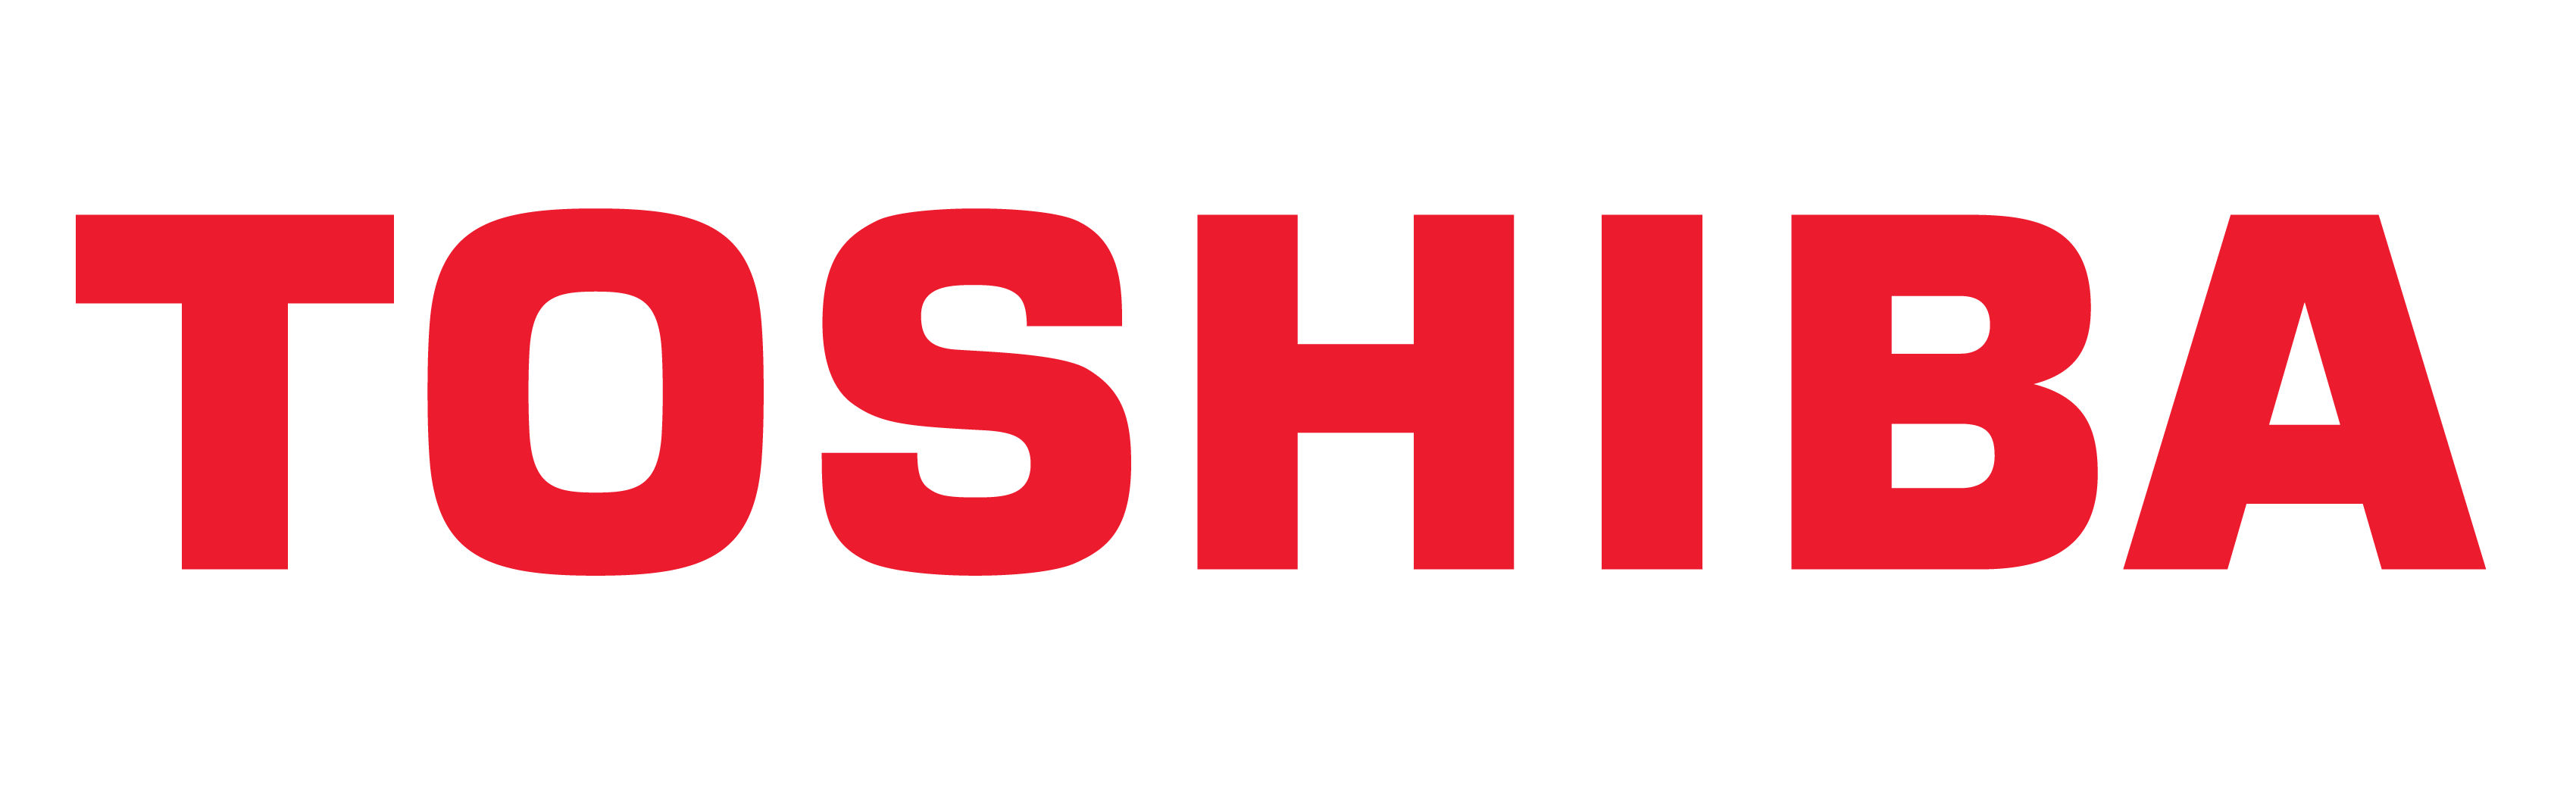 Logo Toshiba, simbolo Toshiba, significato, storia ed evoluzione